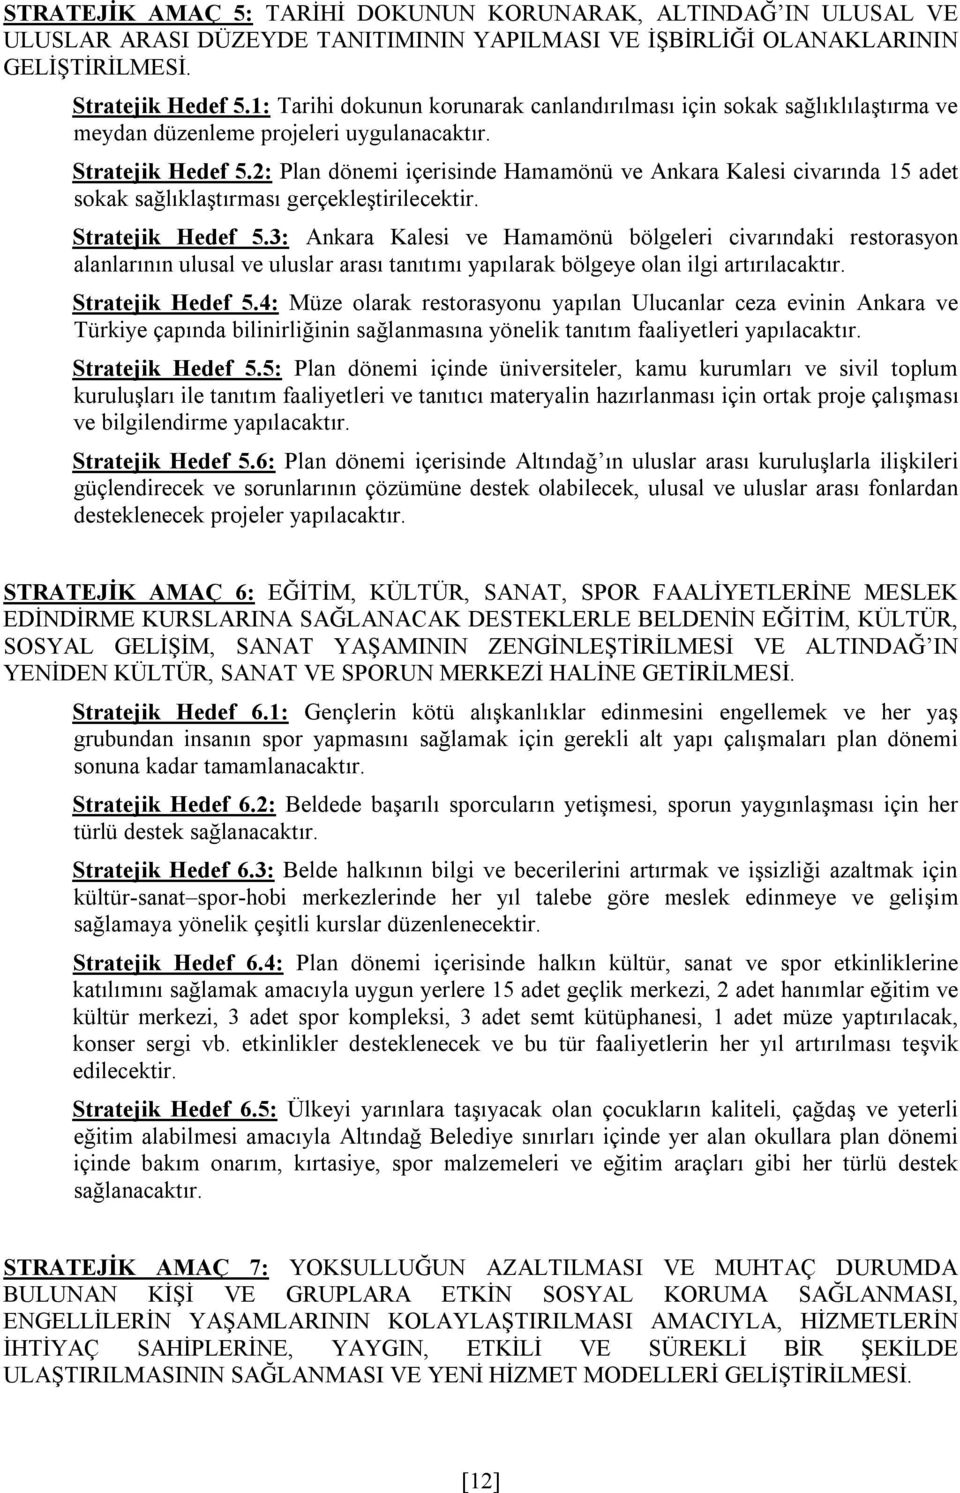 2: Plan dönemi içerisinde Hamamönü ve Ankara Kalesi civarında 15 adet sokak sağlıklaştırması gerçekleştirilecektir. Stratejik Hedef 5.